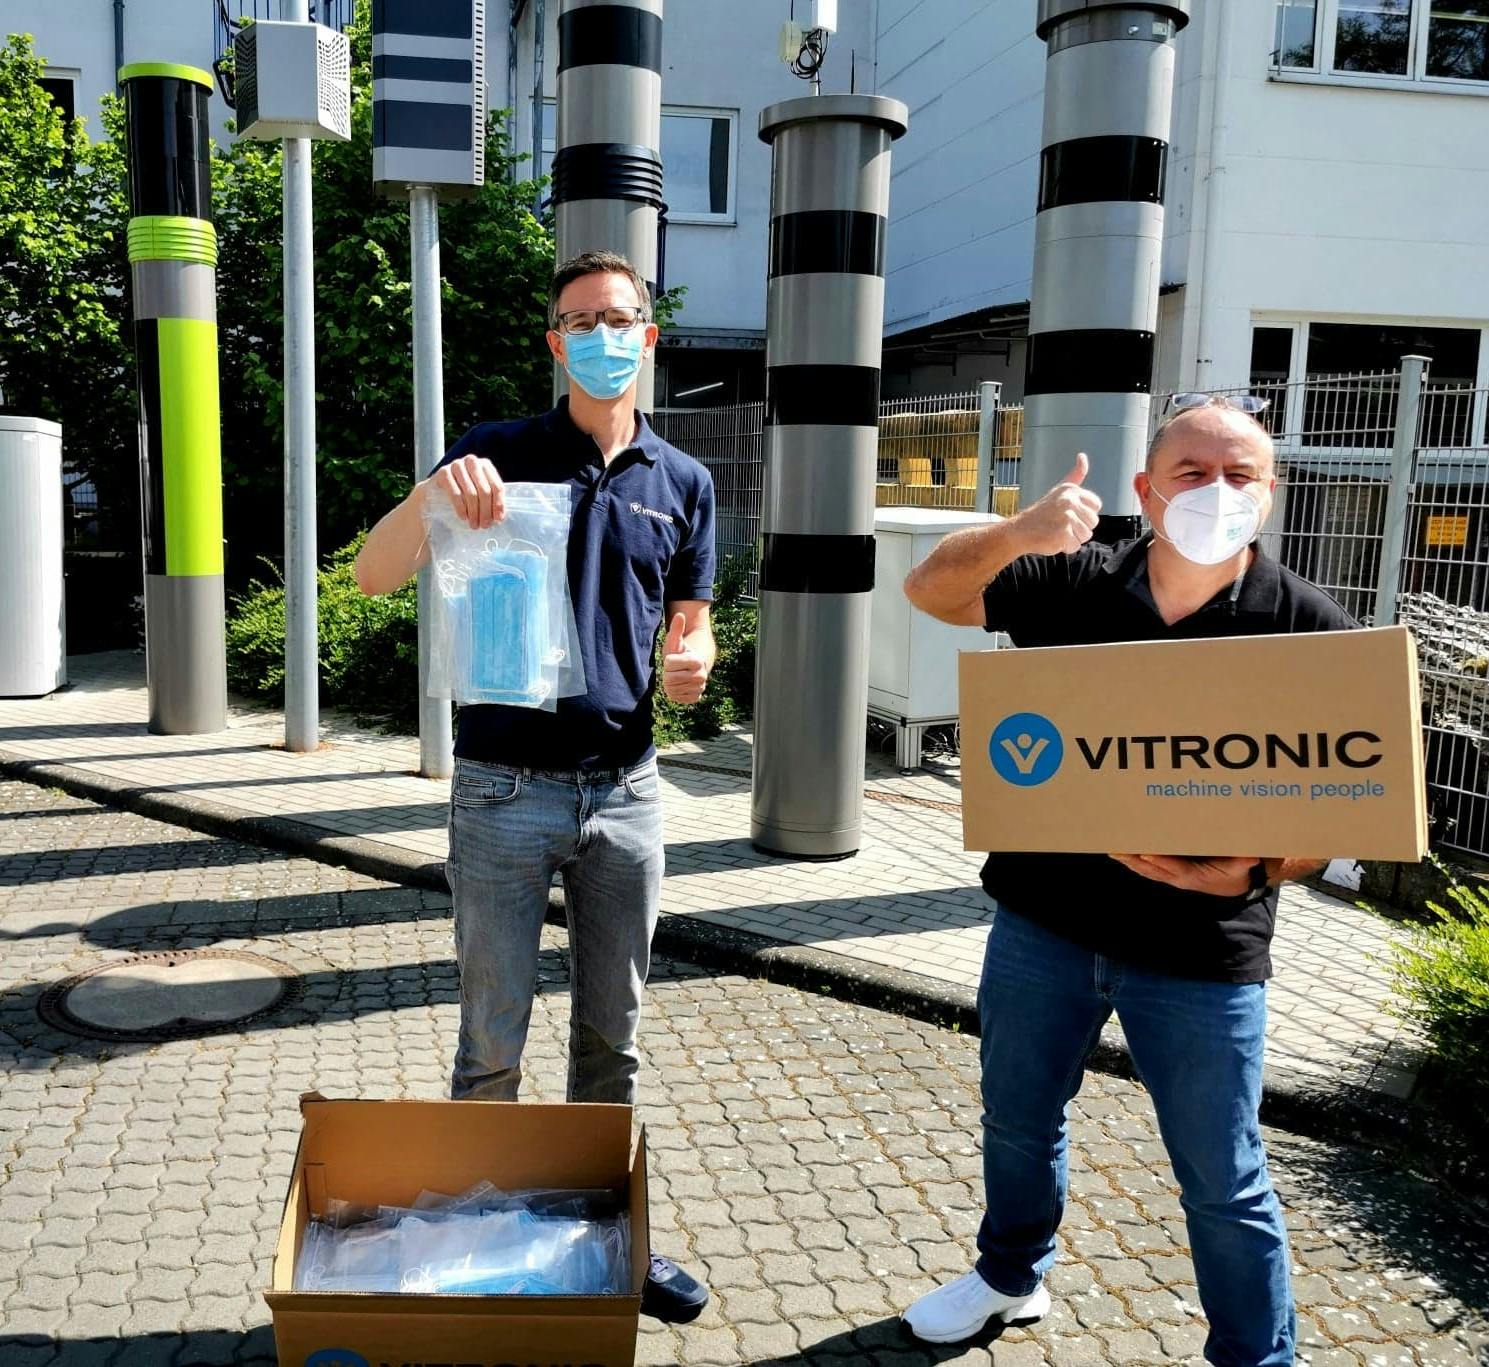 VITRONIC organisiert Mund-Nasen-Masken für soziale Einrichtungen in Wiesbaden